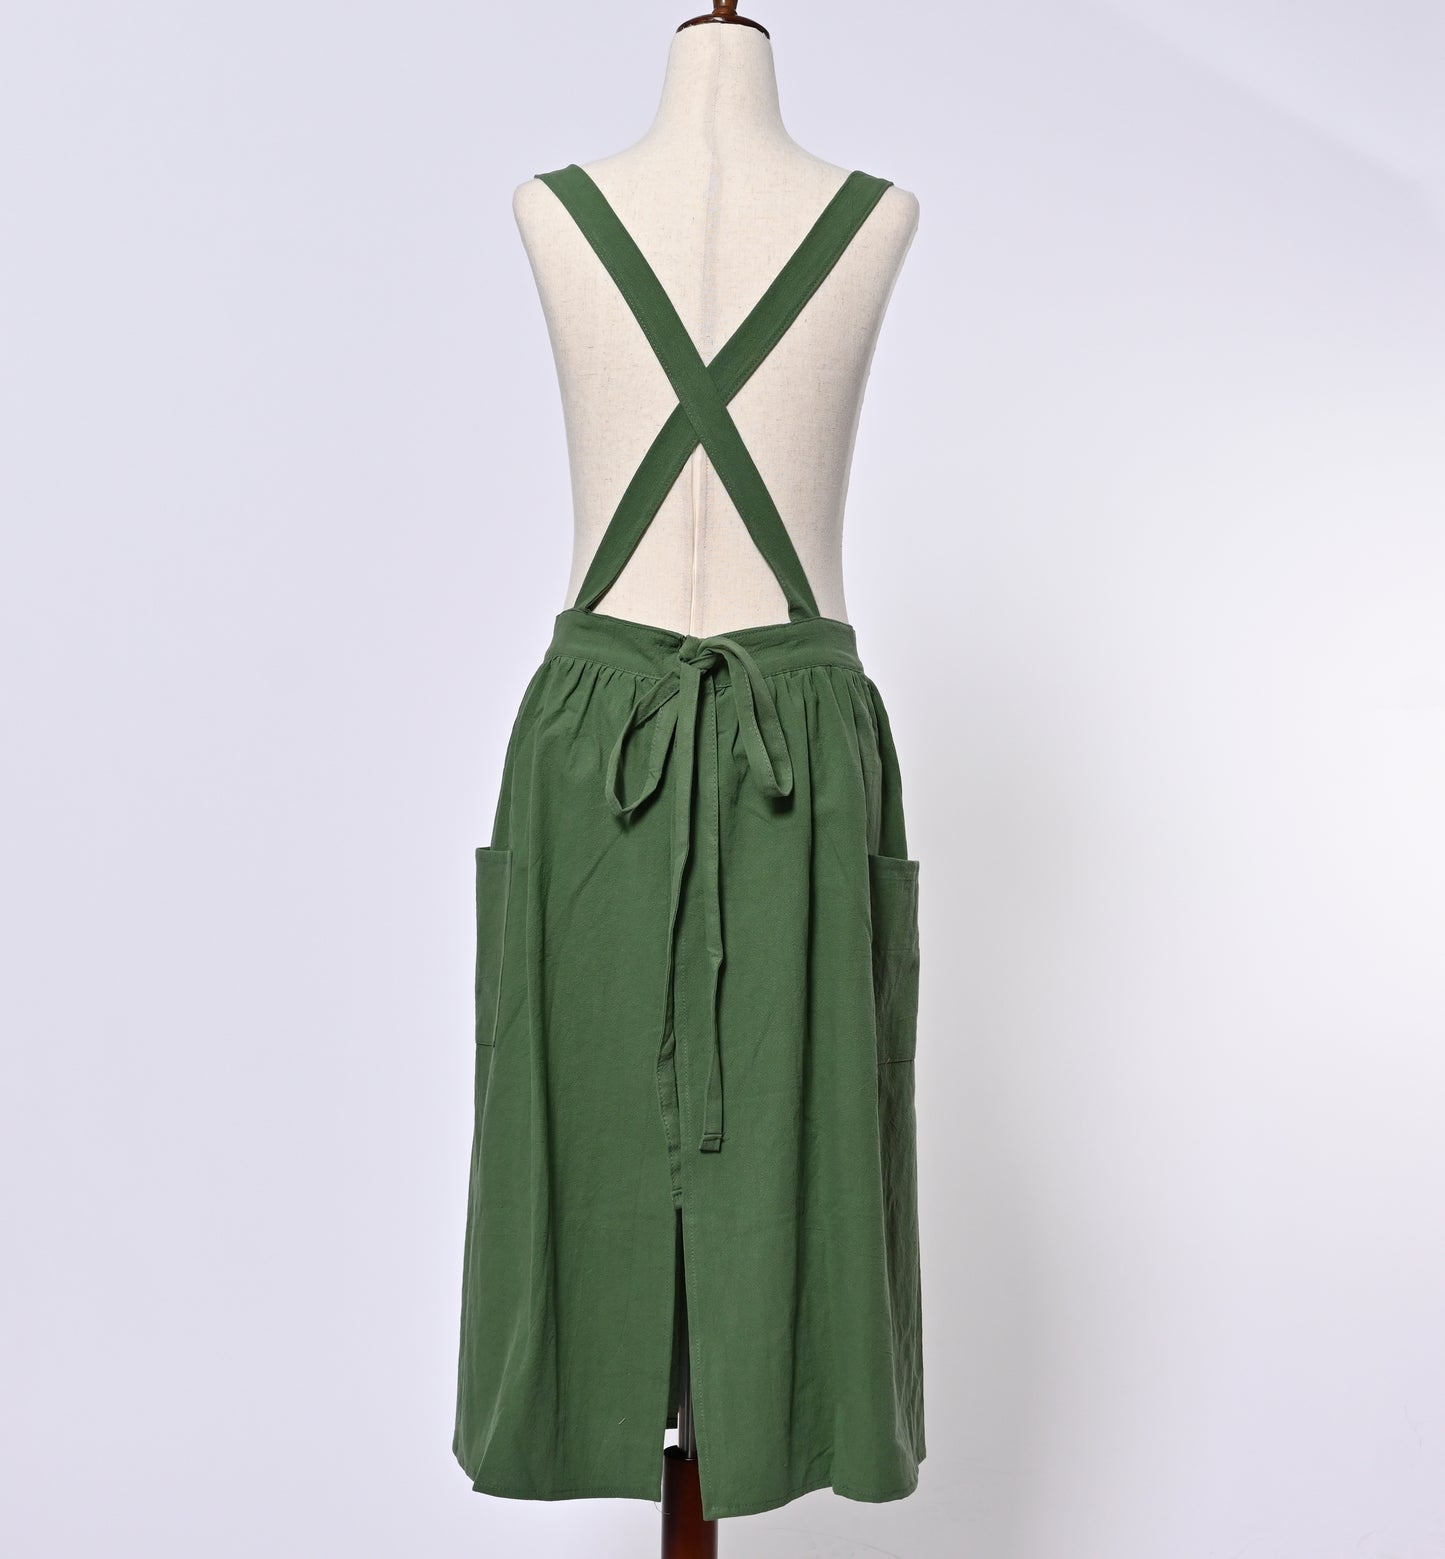 Linen Cotton Dress Apron, Vintage Apron, Country Style Pianfore 1027